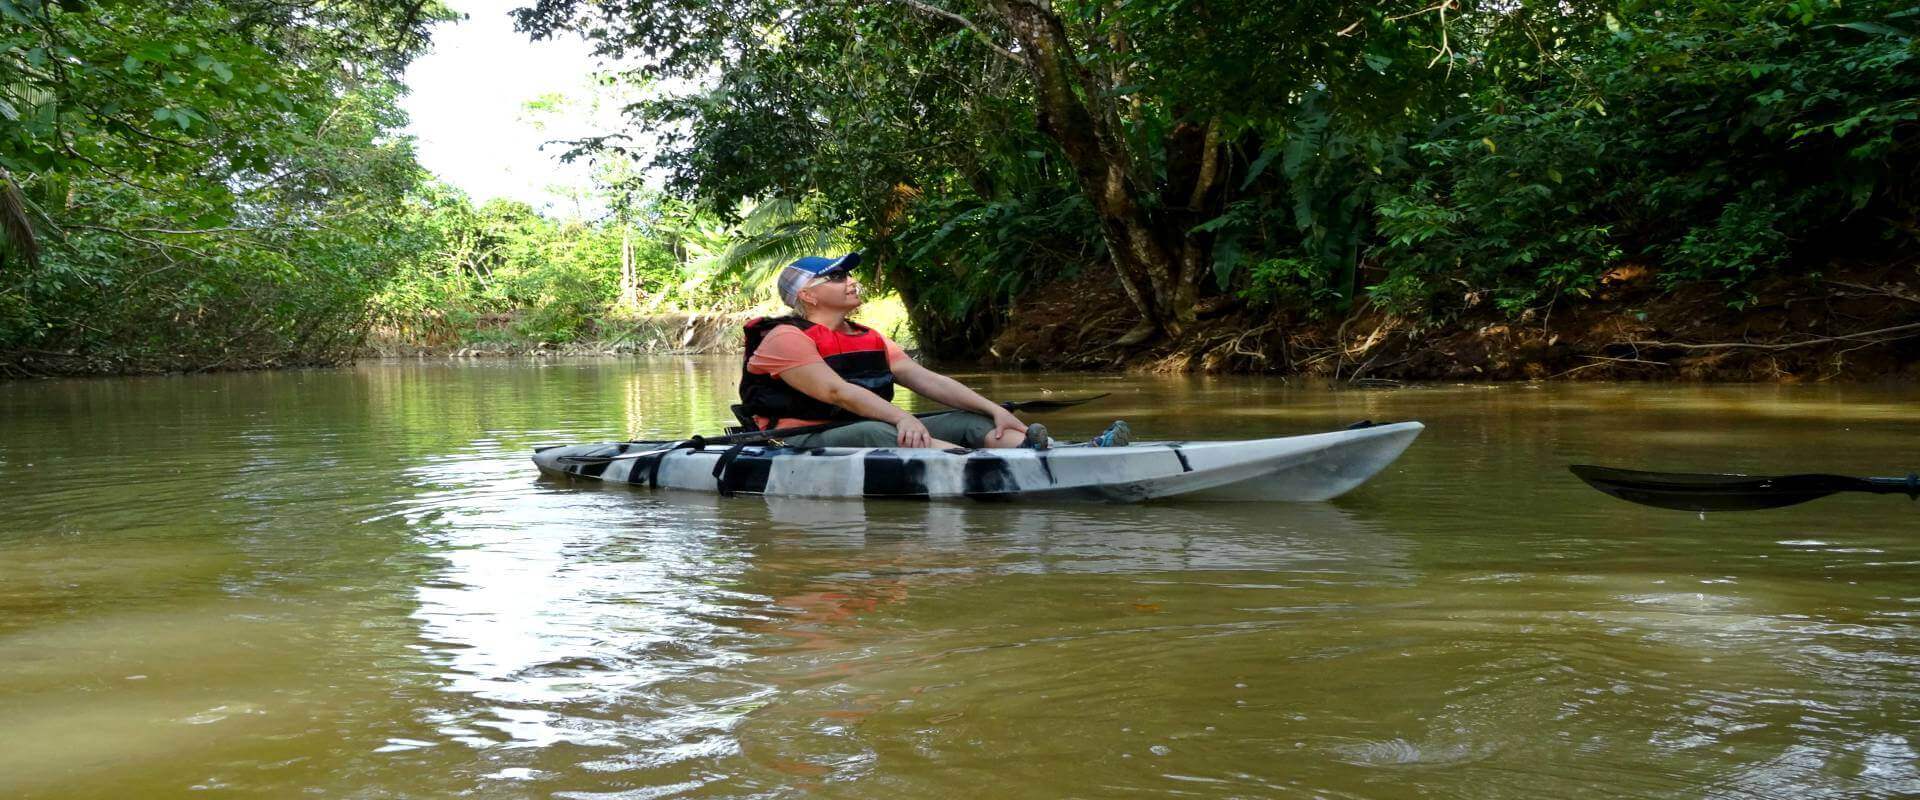 Manglares Isla Damas en kayak | Costa Rica Jade Tours